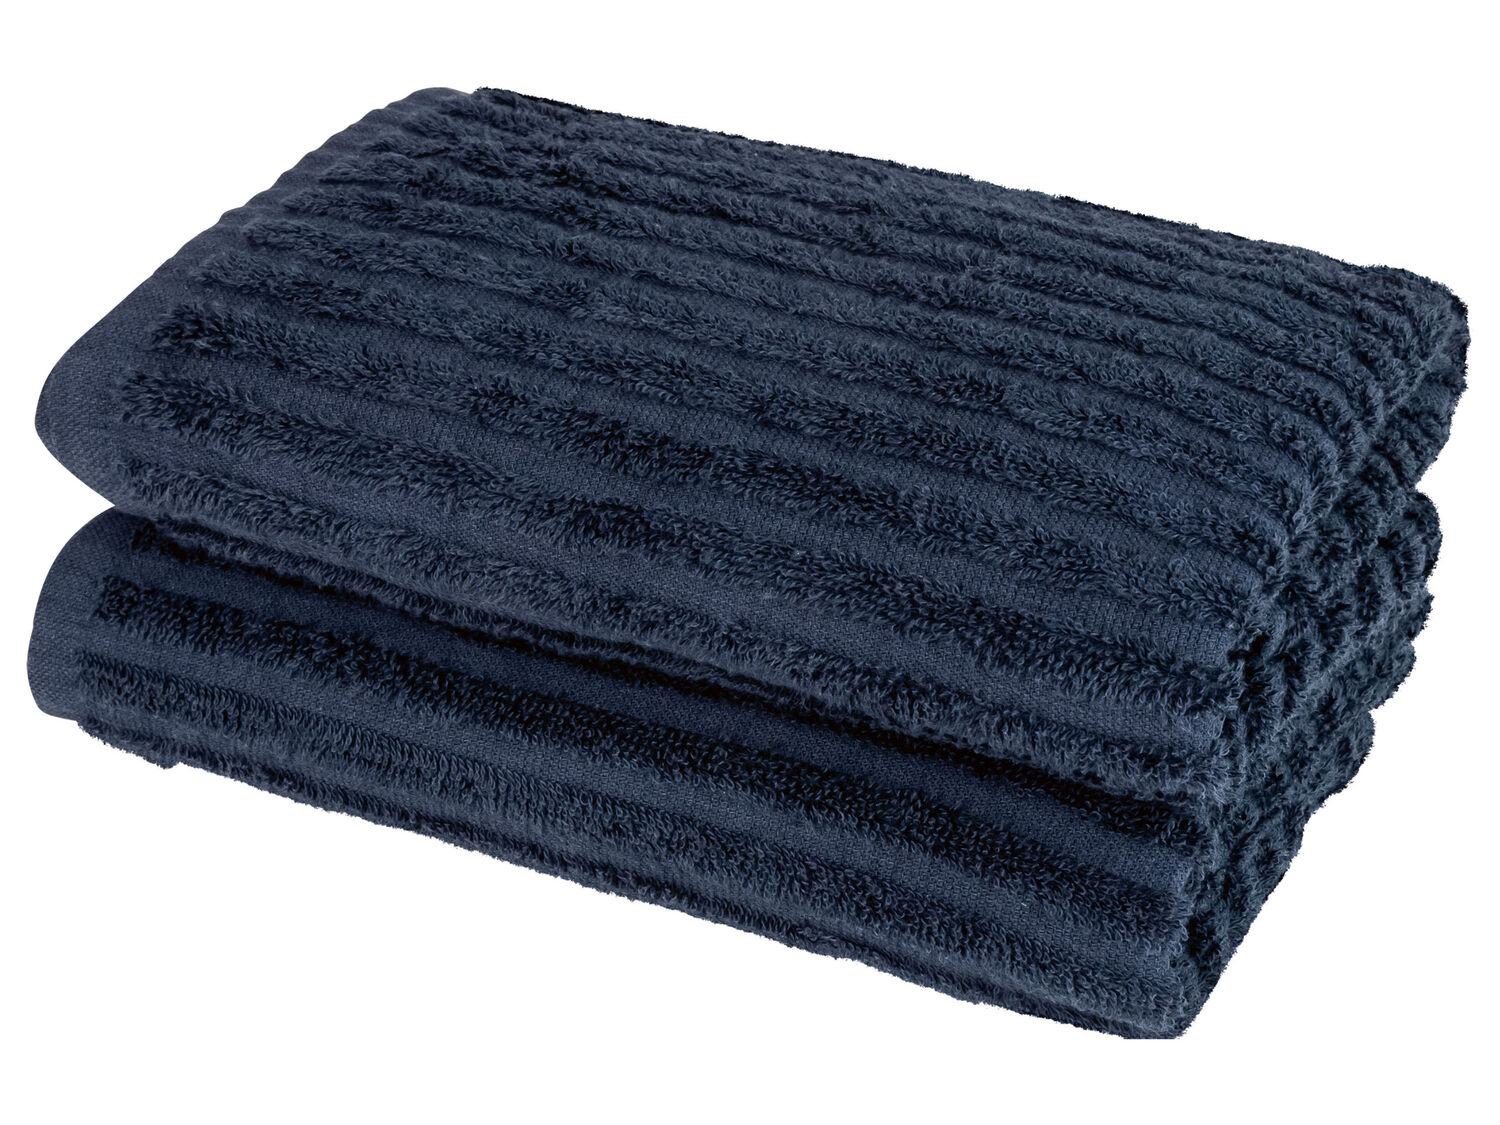 Asciugamano Miomare, prezzo 7.99 &#8364; 
50 x 100 cm - 2 pezzi 
- In cotone ...